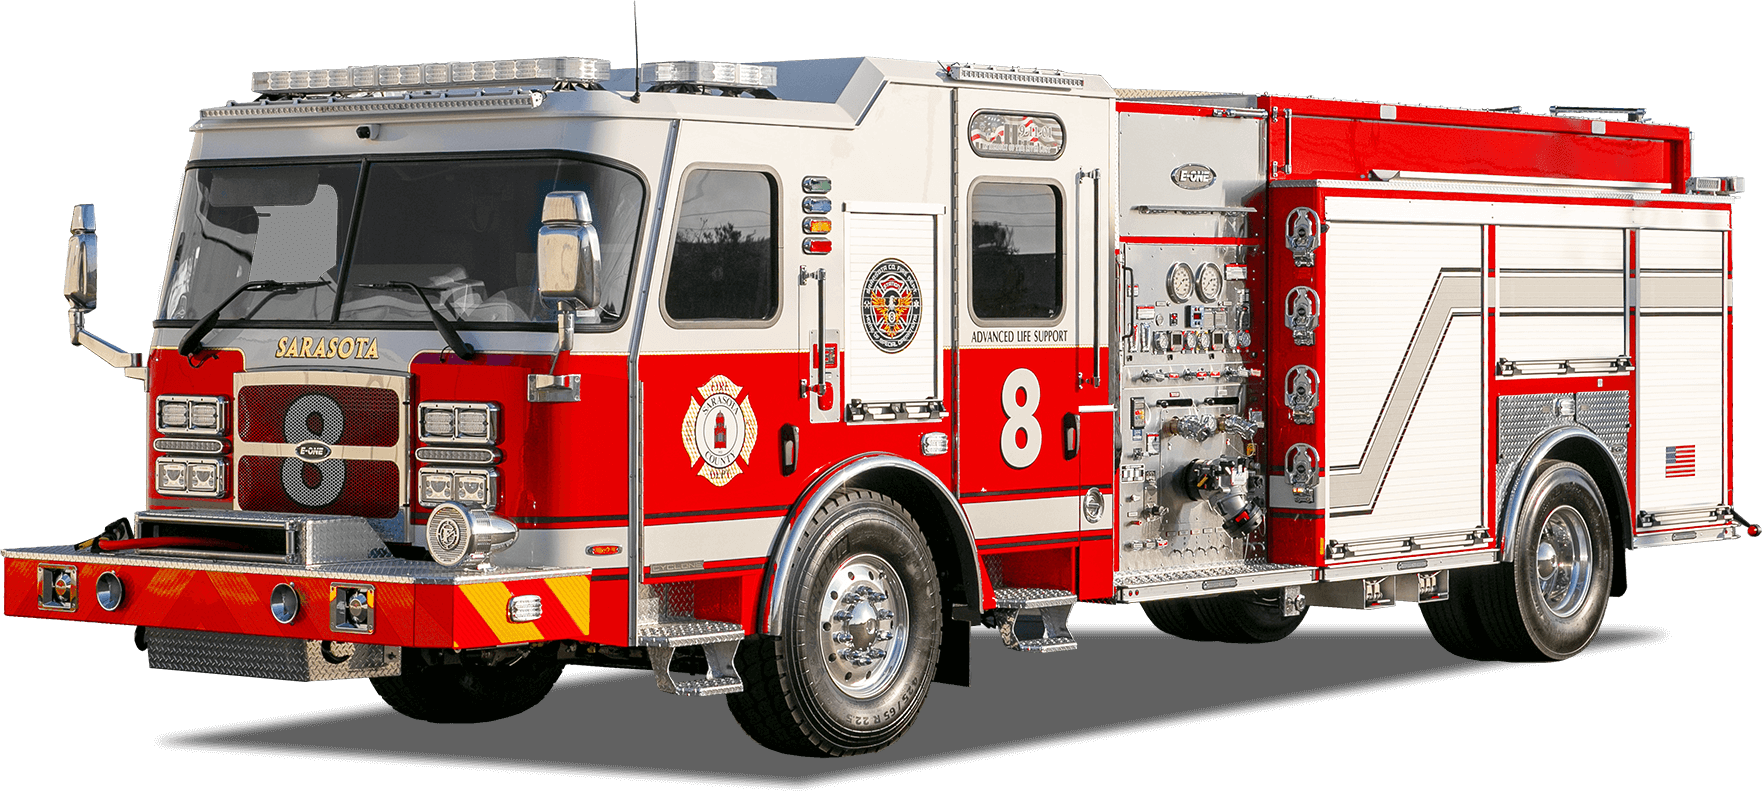 Image of an E-One Pumper Fire Truck